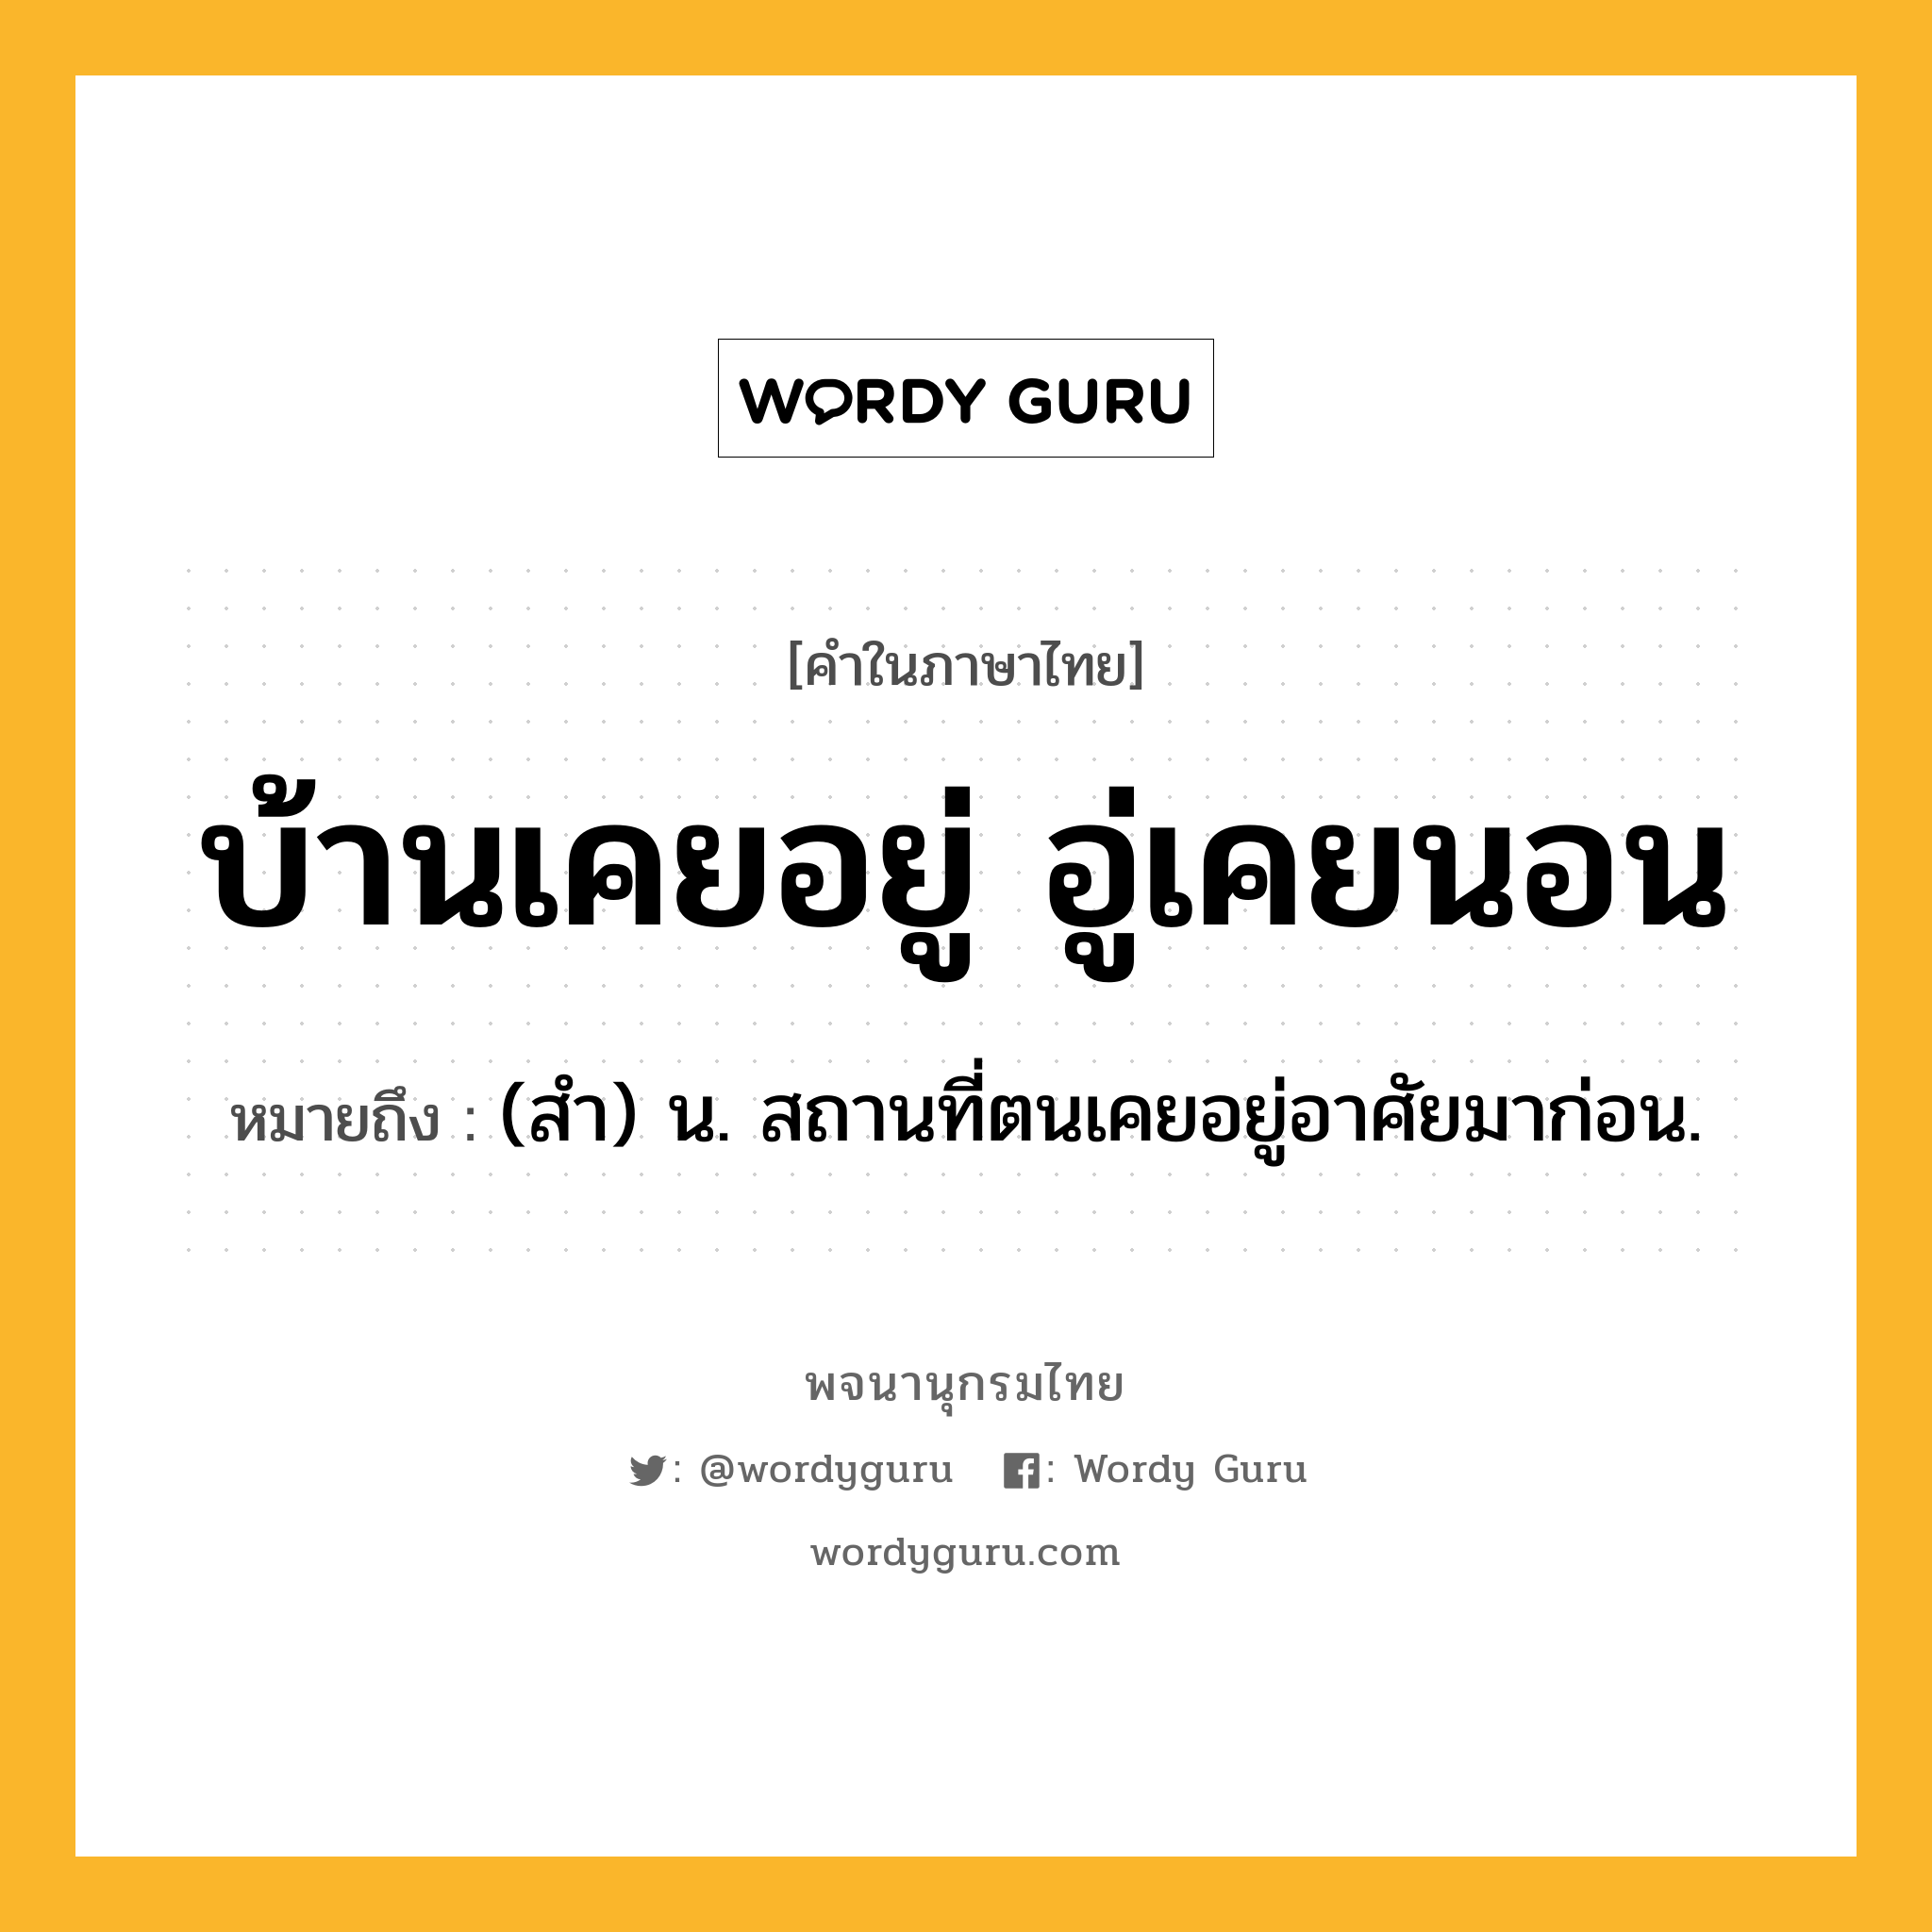 บ้านเคยอยู่ อู่เคยนอน ความหมาย หมายถึงอะไร?, คำในภาษาไทย บ้านเคยอยู่ อู่เคยนอน หมายถึง (สํา) น. สถานที่ตนเคยอยู่อาศัยมาก่อน.